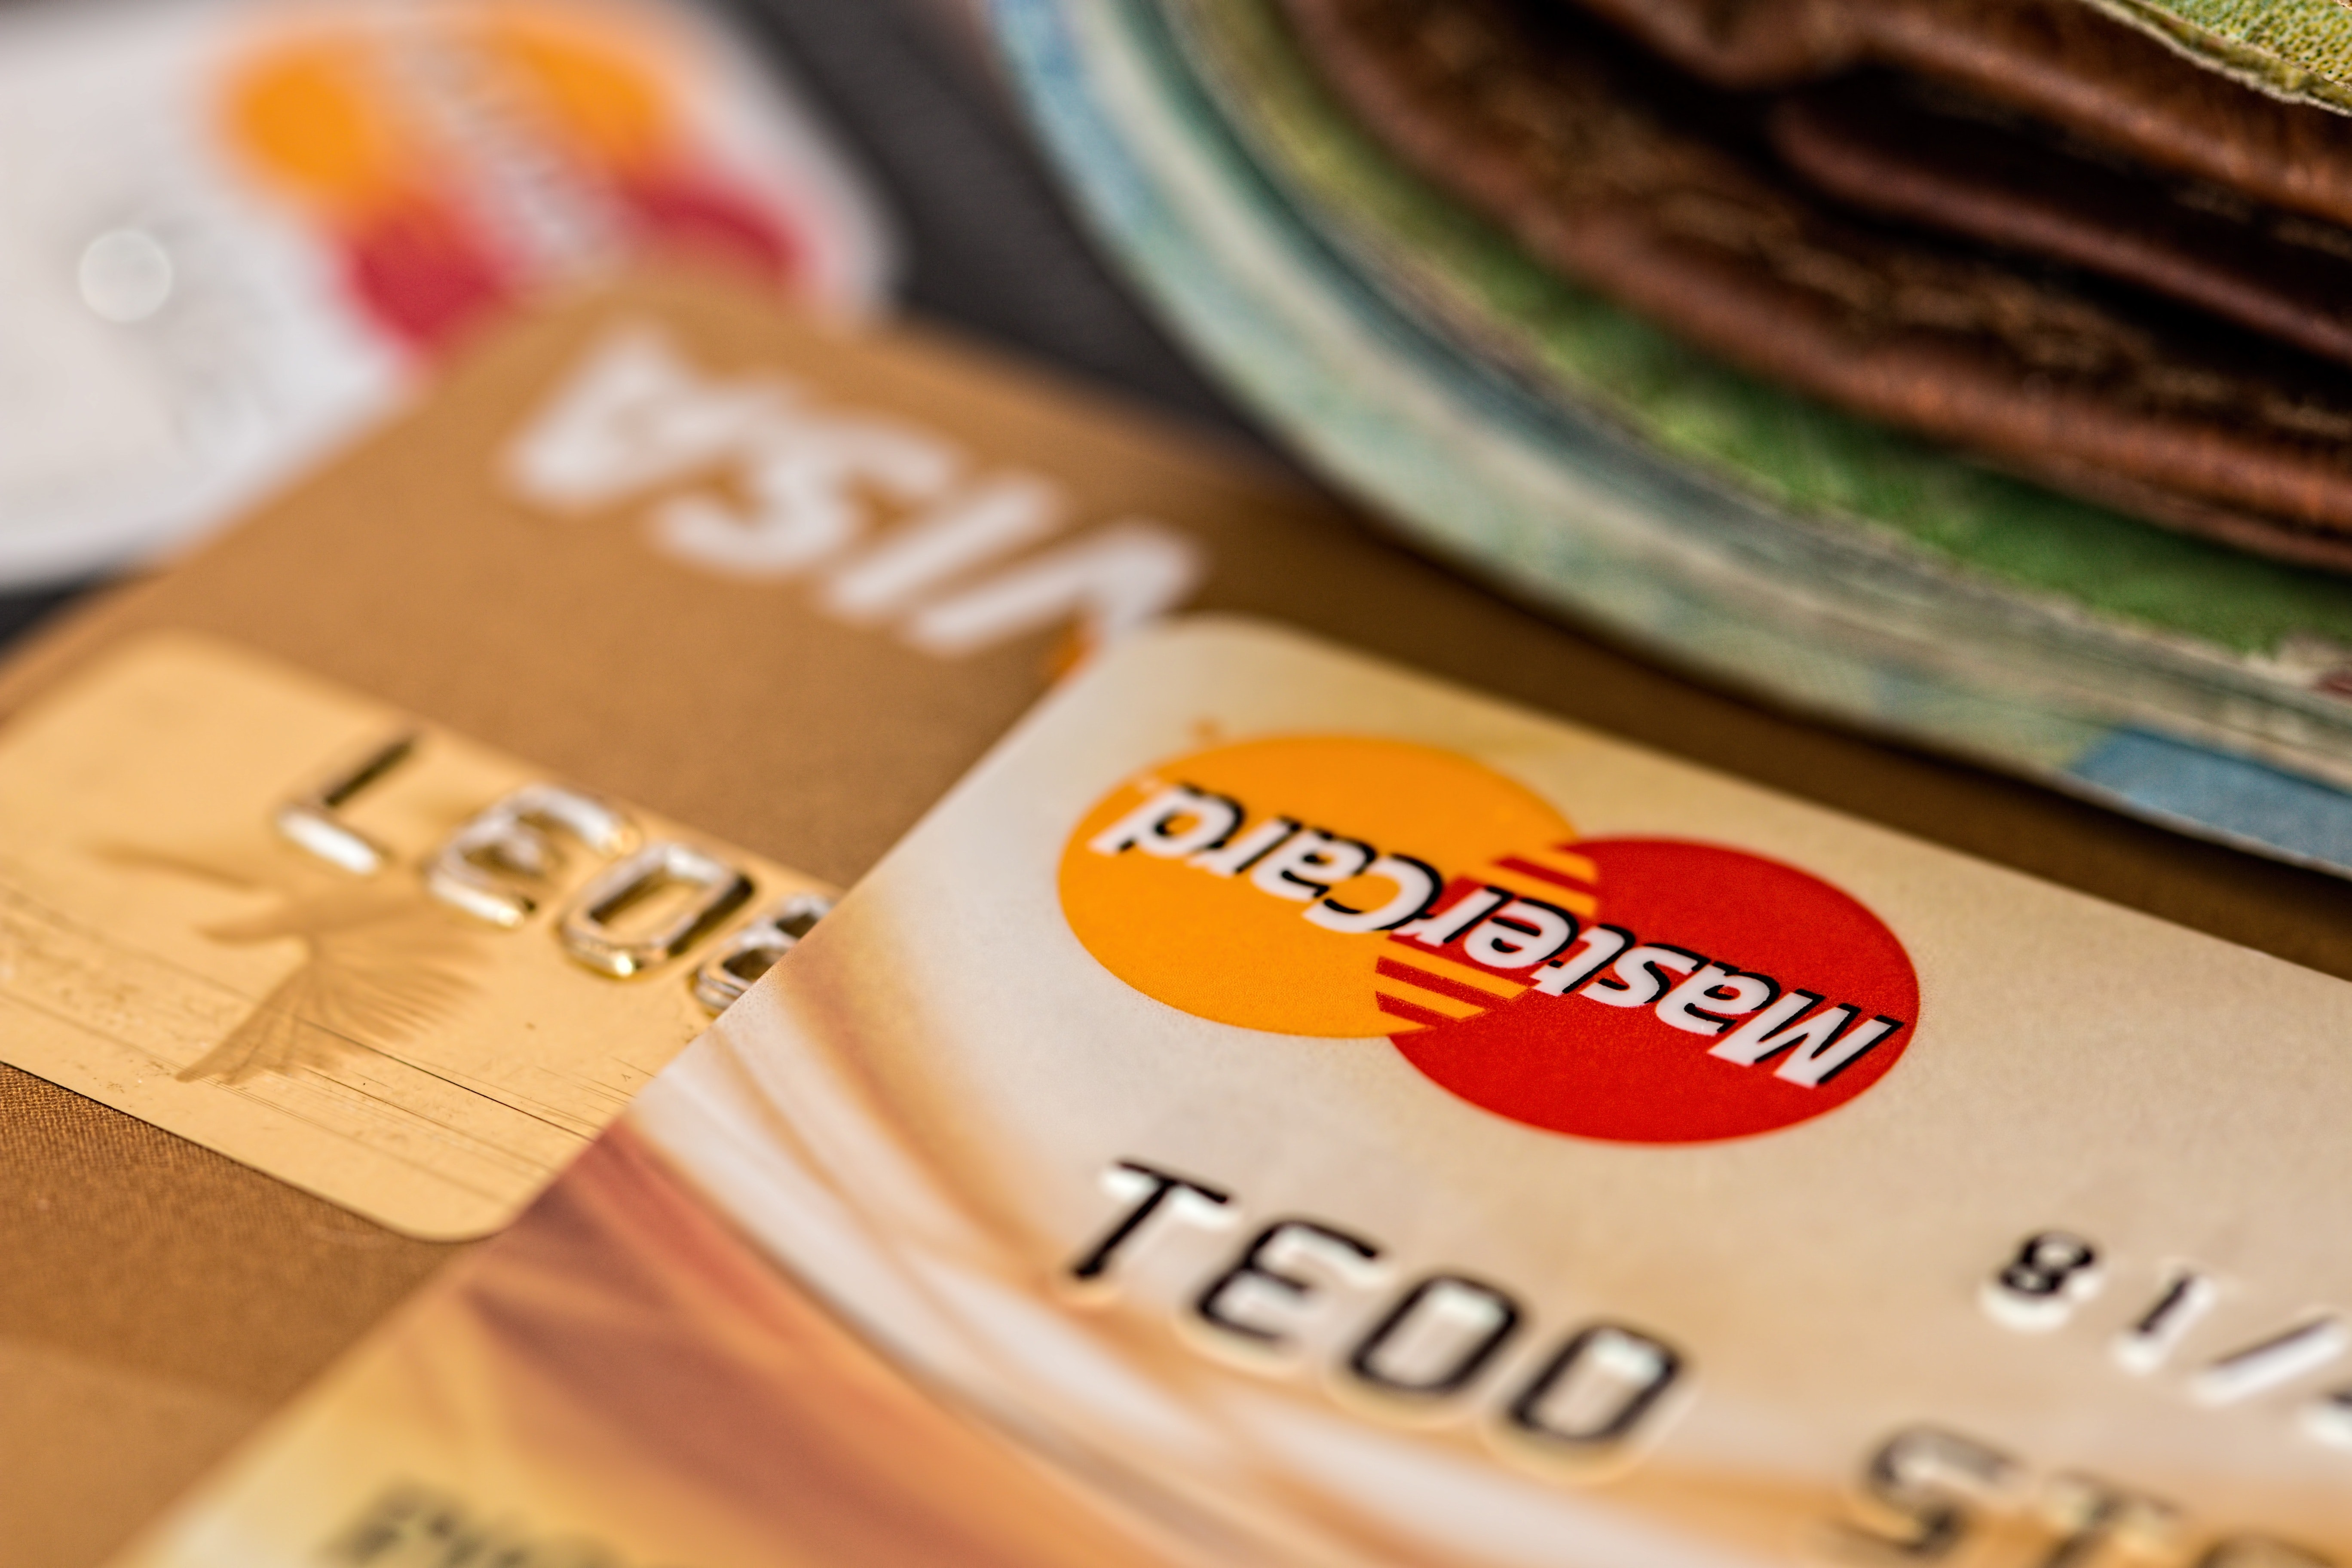 ¿Qué es mejor? ¿pagar con tarjeta de crédito o débito?